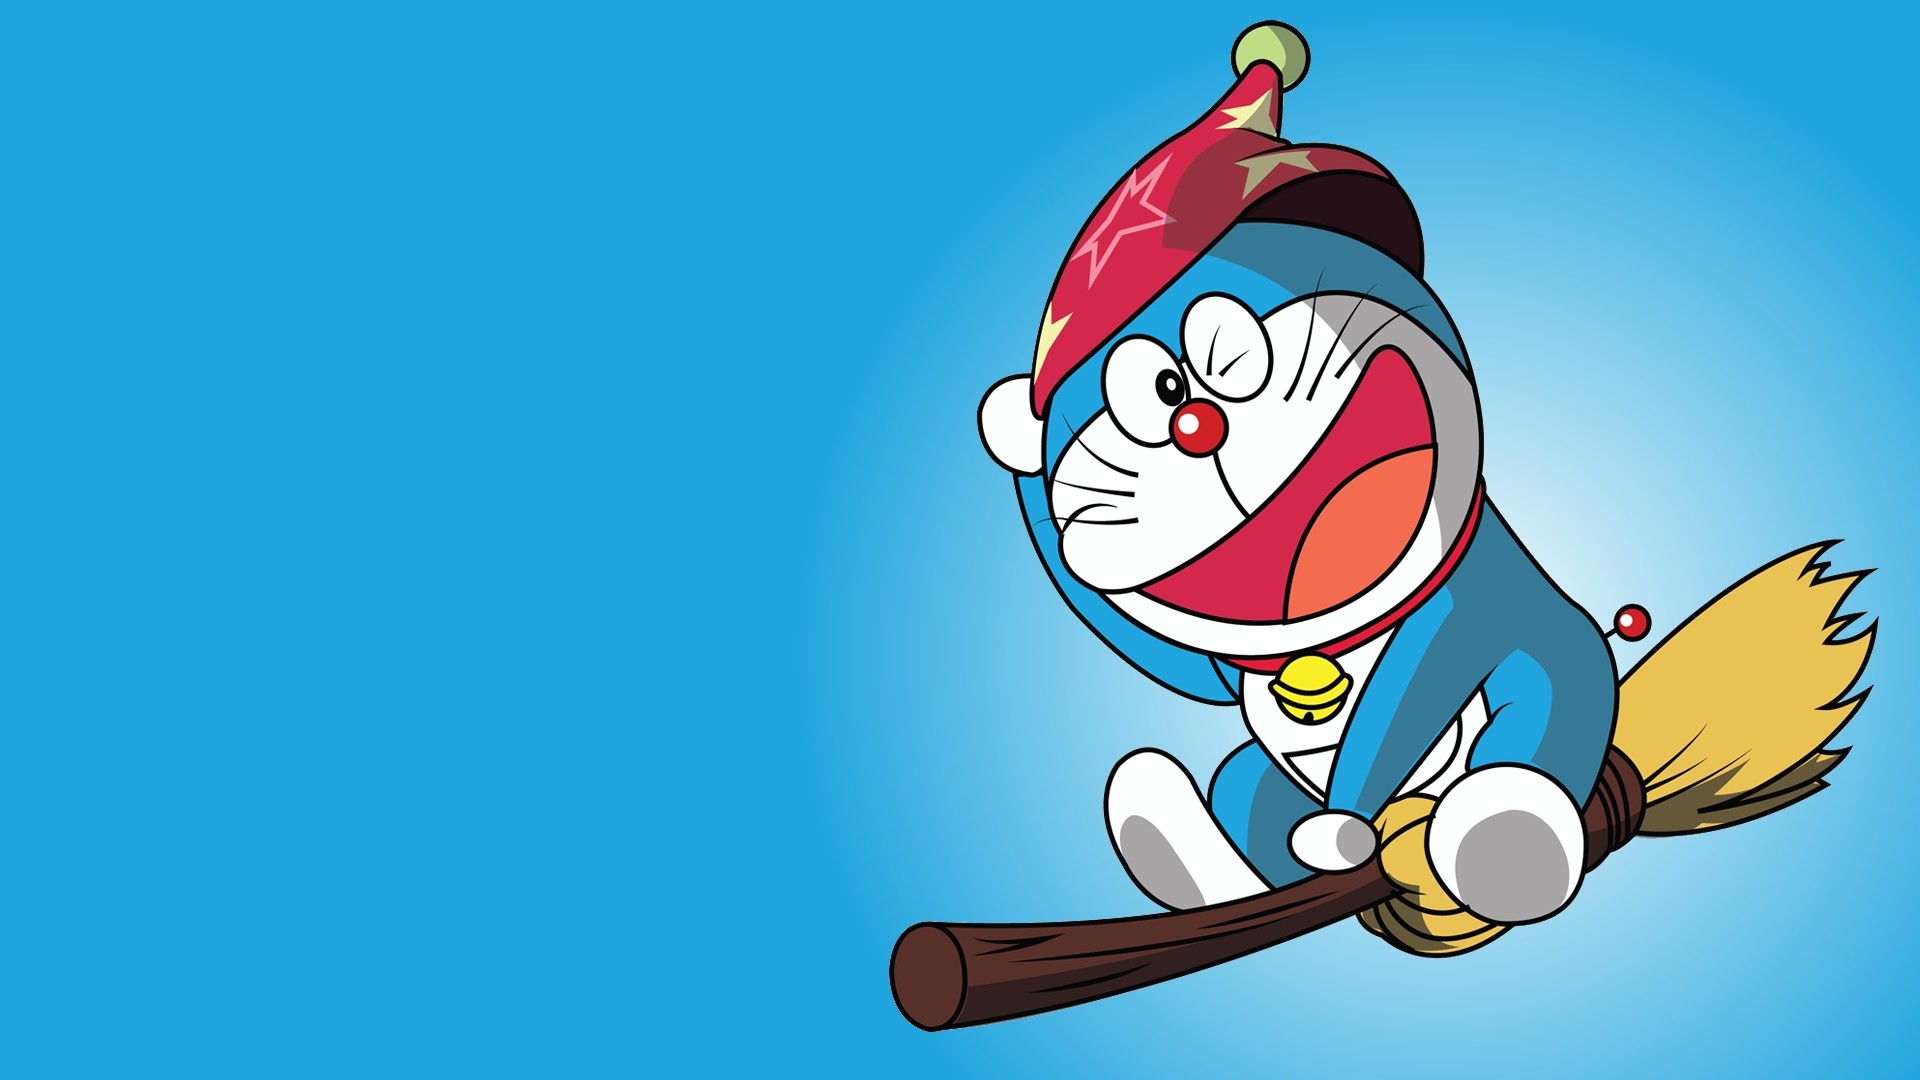 Hình nền Doraemon: Hãy trang trí nền máy tính của bạn với hình nền Doraemon đáng yêu, mang đến không gian làm việc thật vui tươi và đầy màu sắc. Điều này chắc chắn sẽ giúp bạn tăng năng suất trong công việc và cảm thấy thư giãn hơn khi ngắm nhìn chú mèo máy xinh đẹp này.